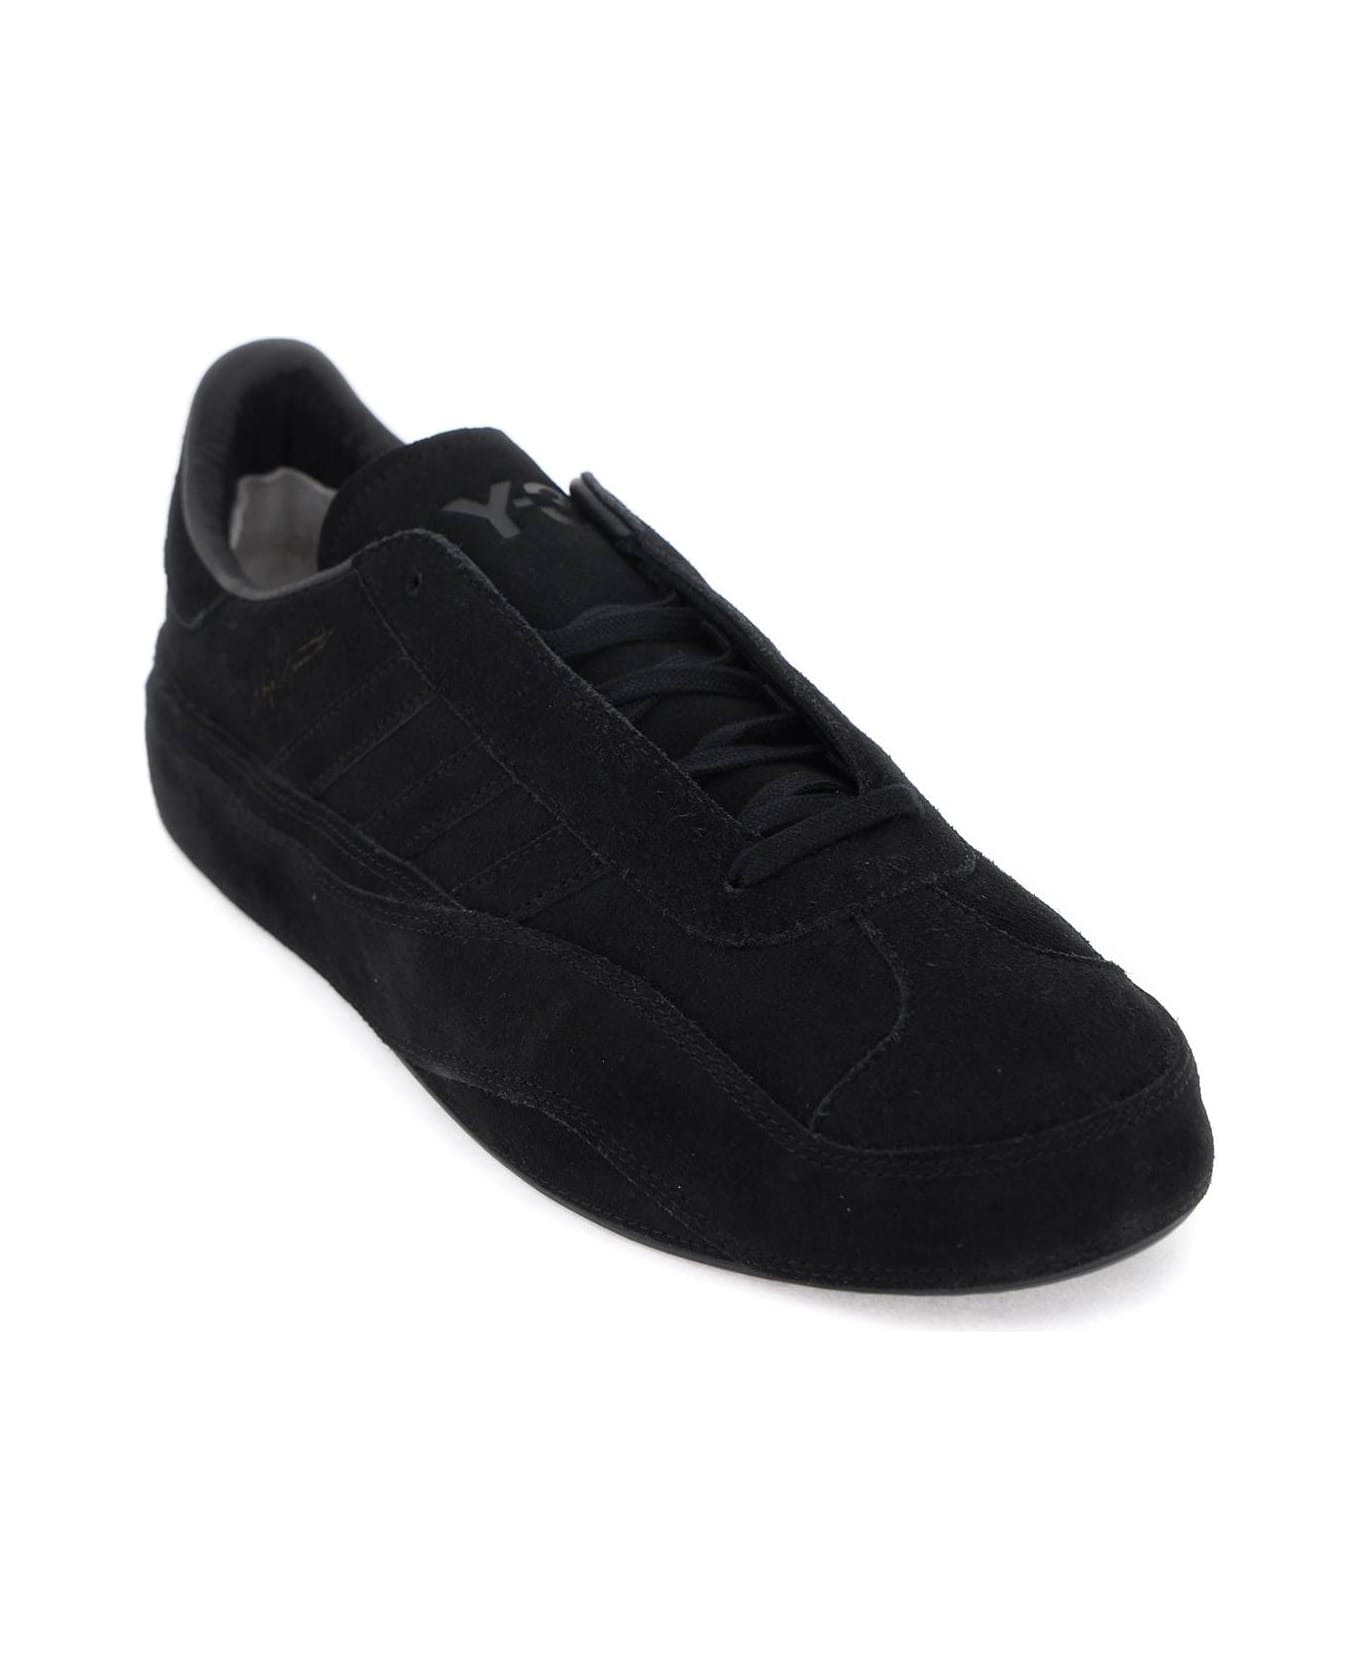 Y-3 Gazzelle Sneakers - BLACK BLACK BLACK (Black) スニーカー